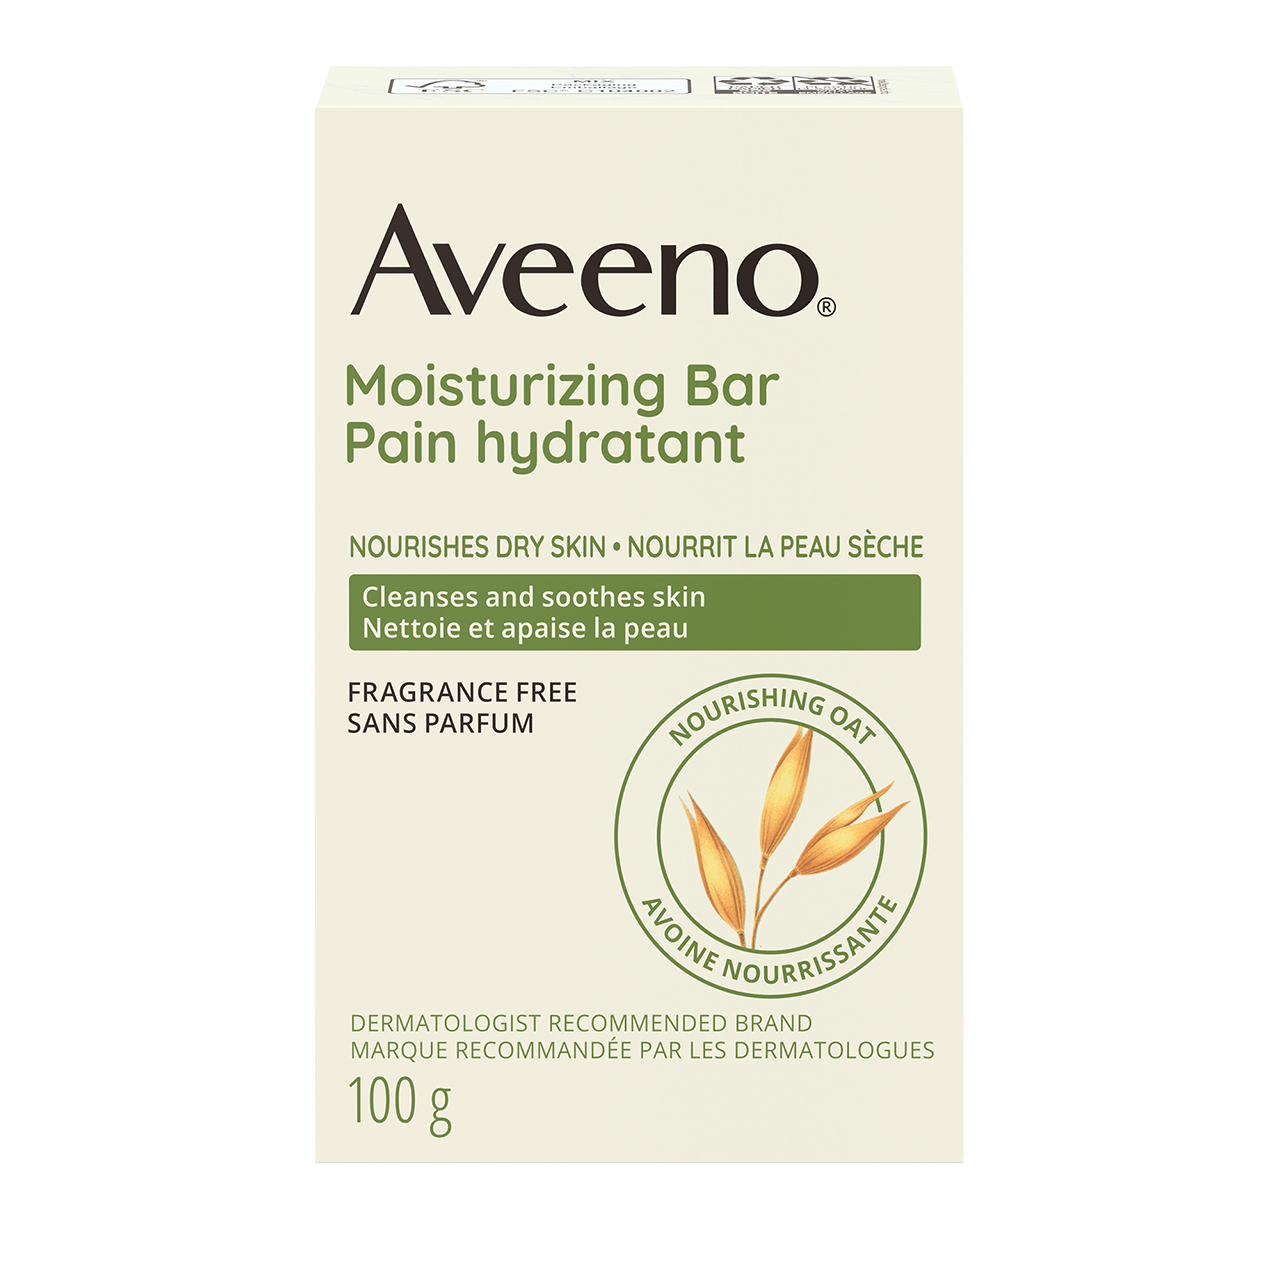 AVEENO® Moisturizing Bar for Dry Skin, Fragrance-free, 100g packaging